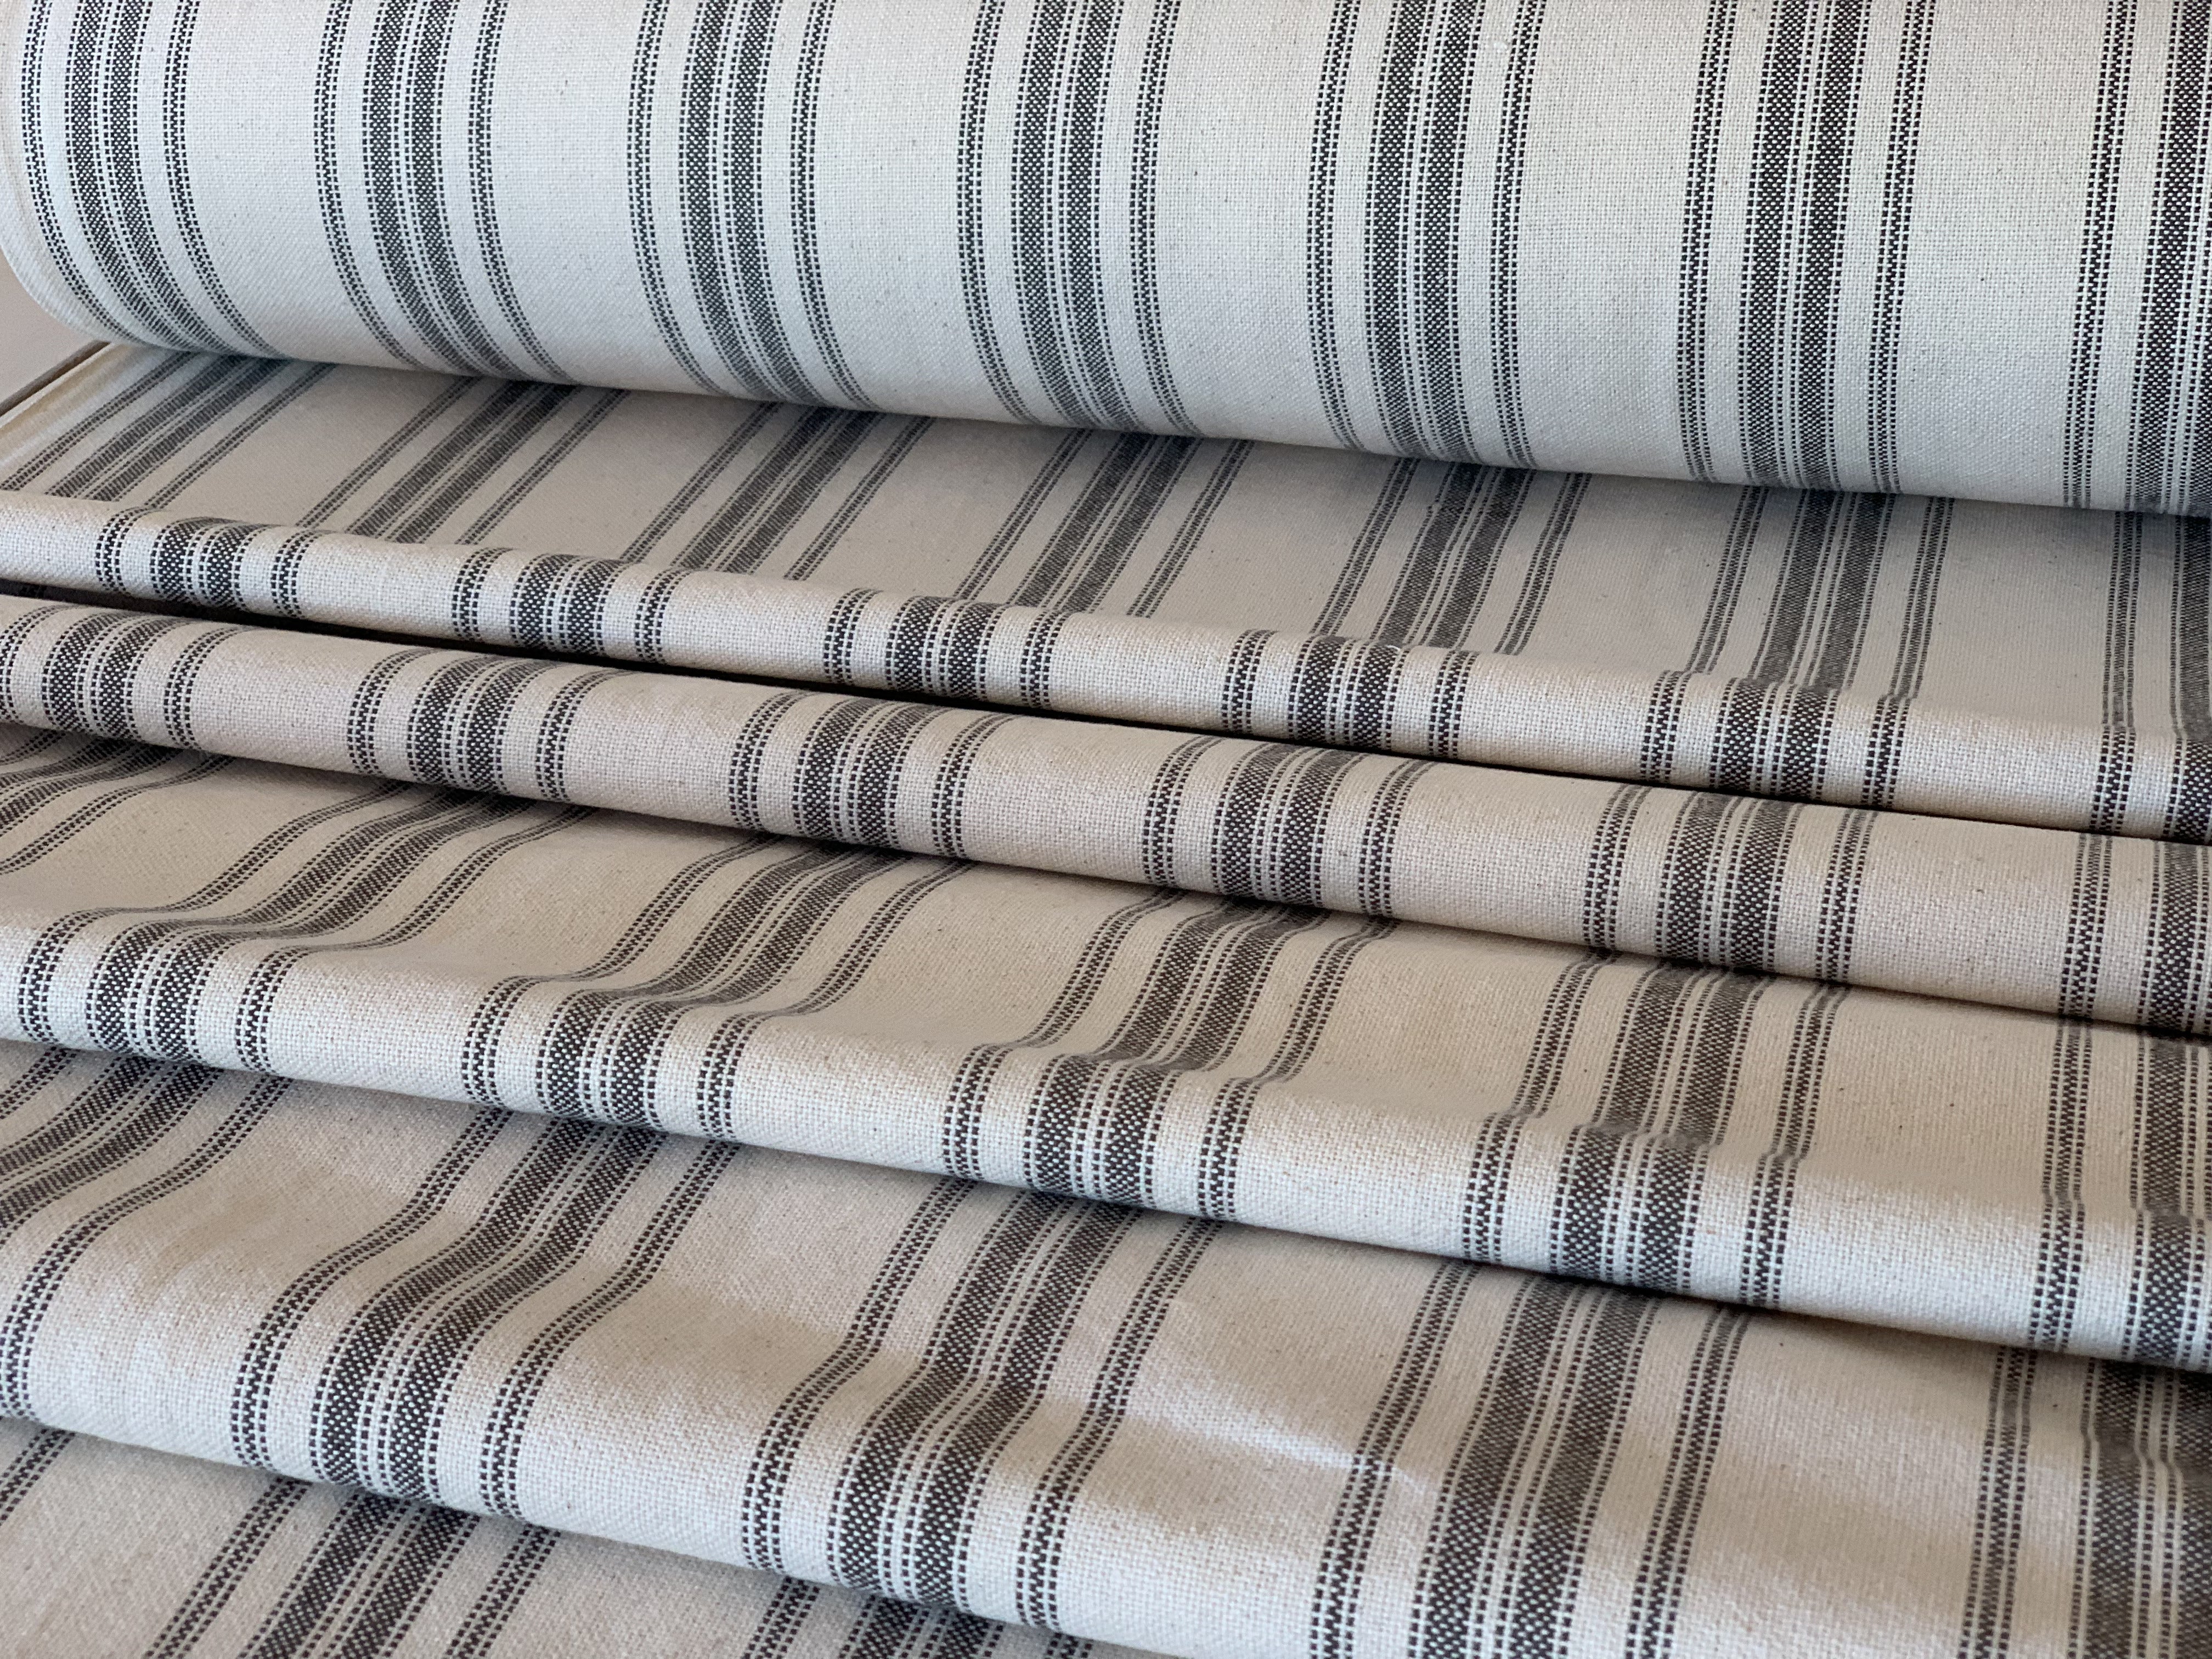 Grain Sack Fabric - Our Exclusive 63" Gray on Cream Multi-Stripe